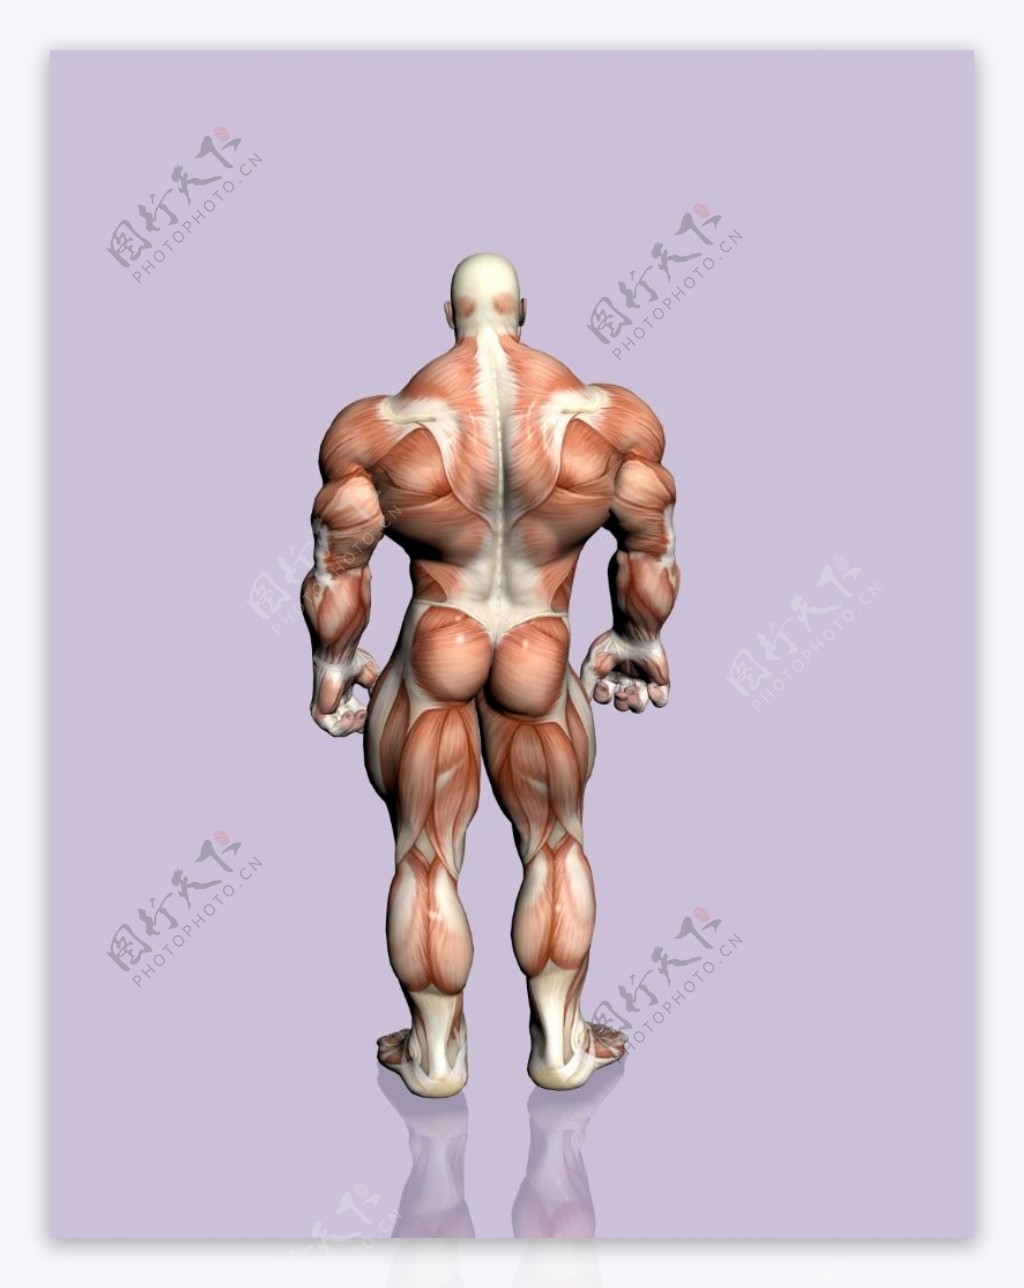 肌肉人体模型0138